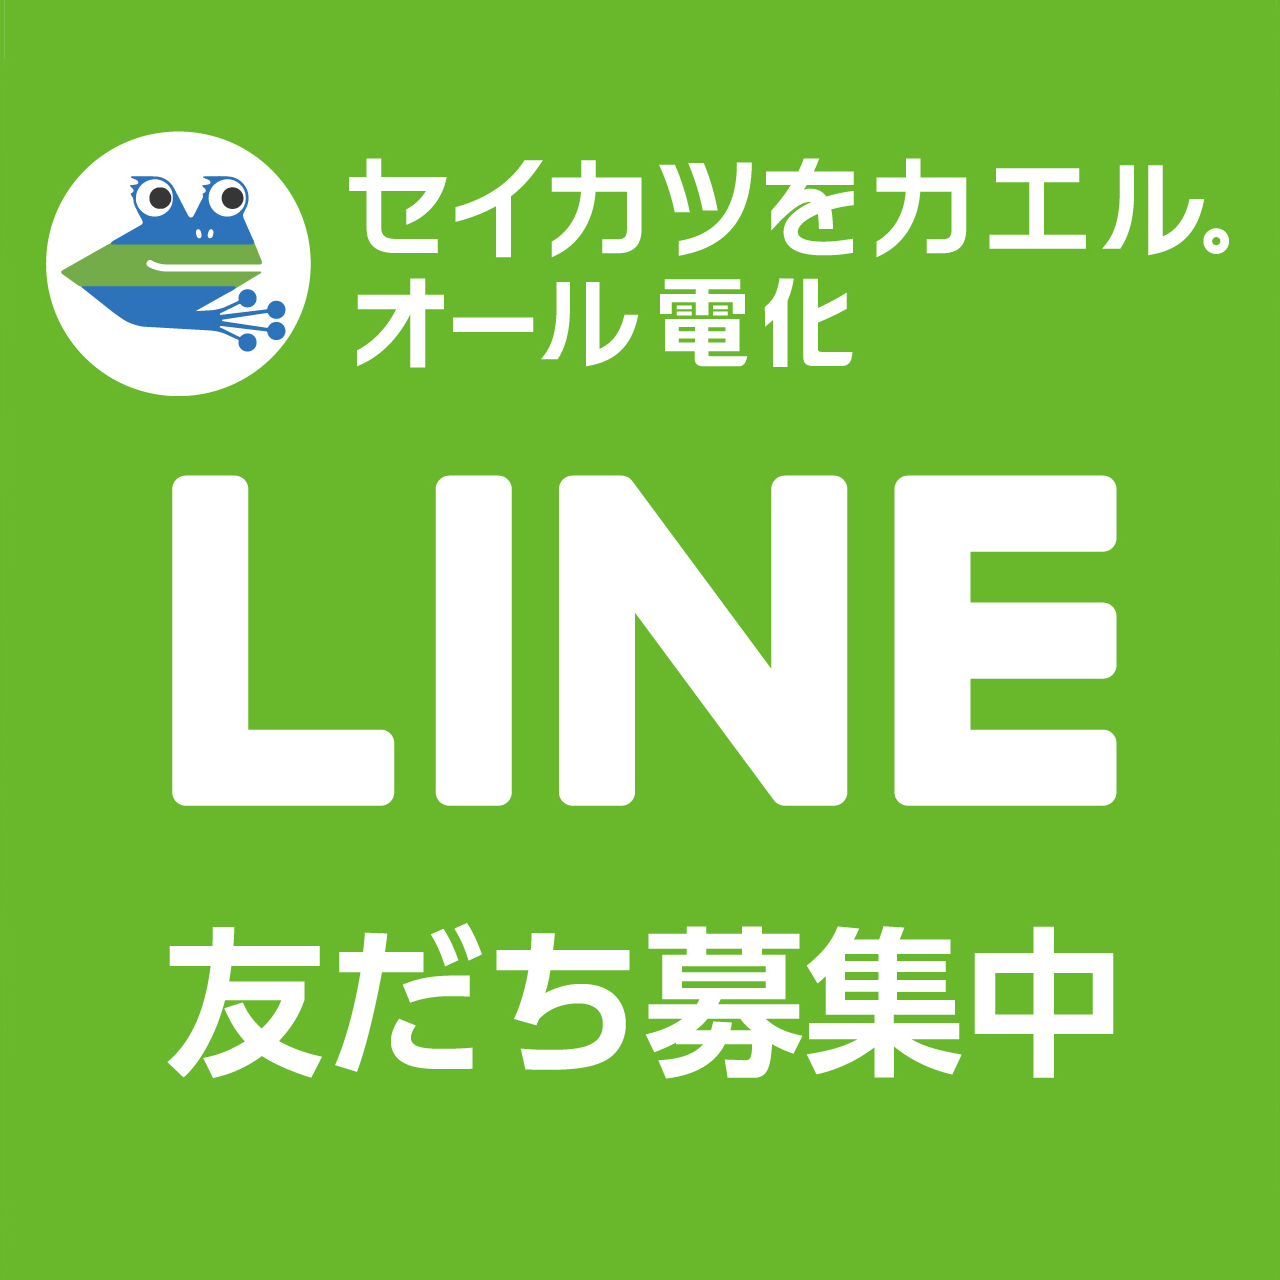 LINE@友達